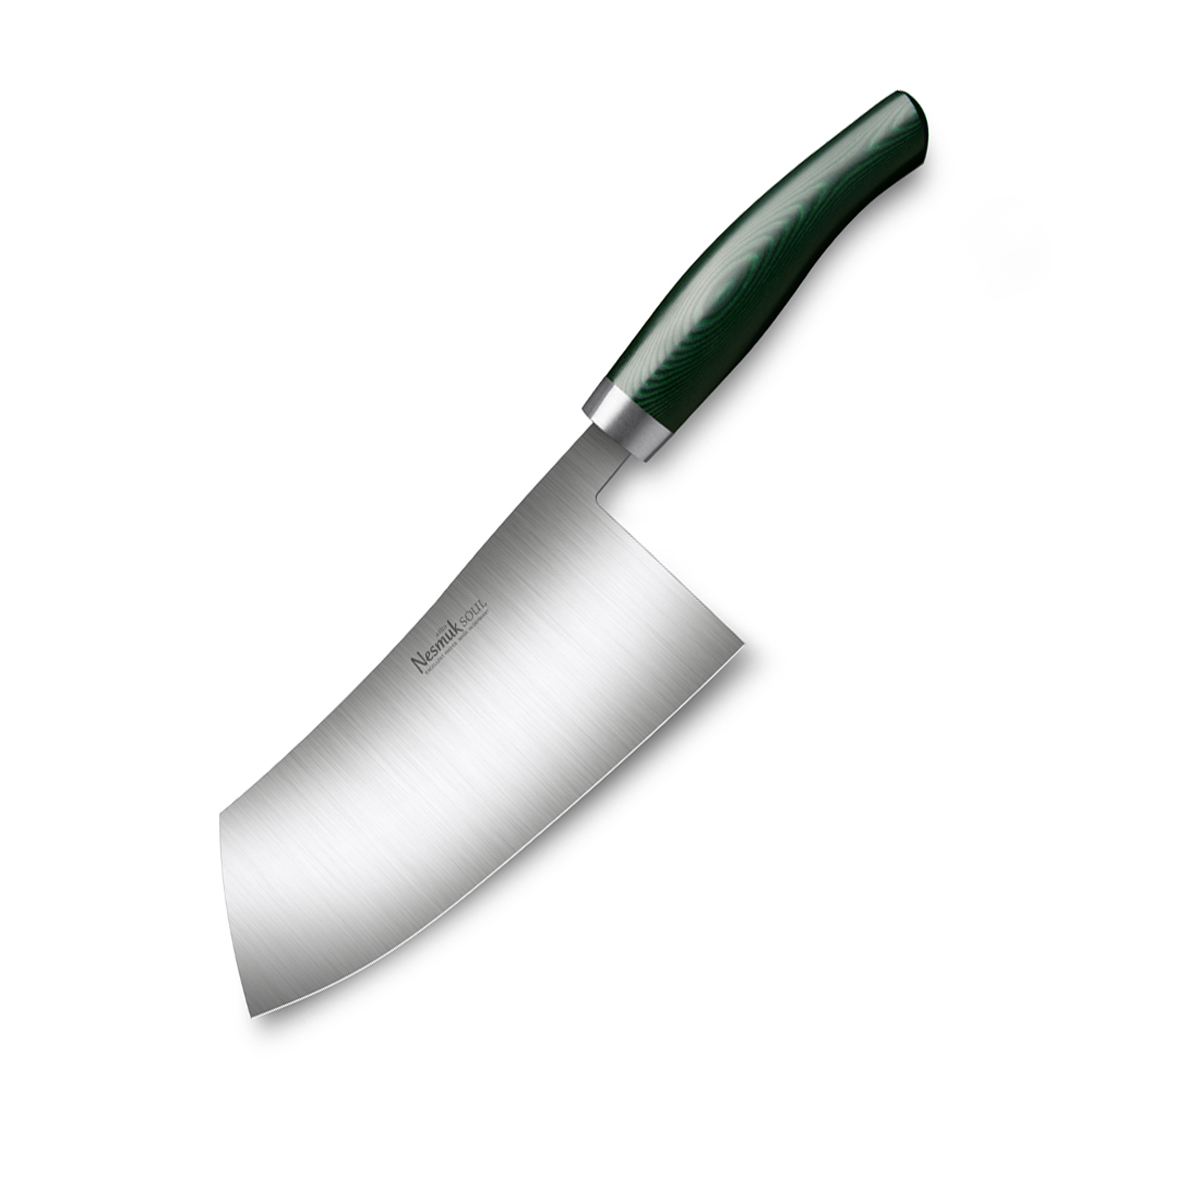 Nesmuk Soul Chinesisches Kochmesser 18 cm / Niob-Hochleistungsstahl mit Griff aus Micarta Green